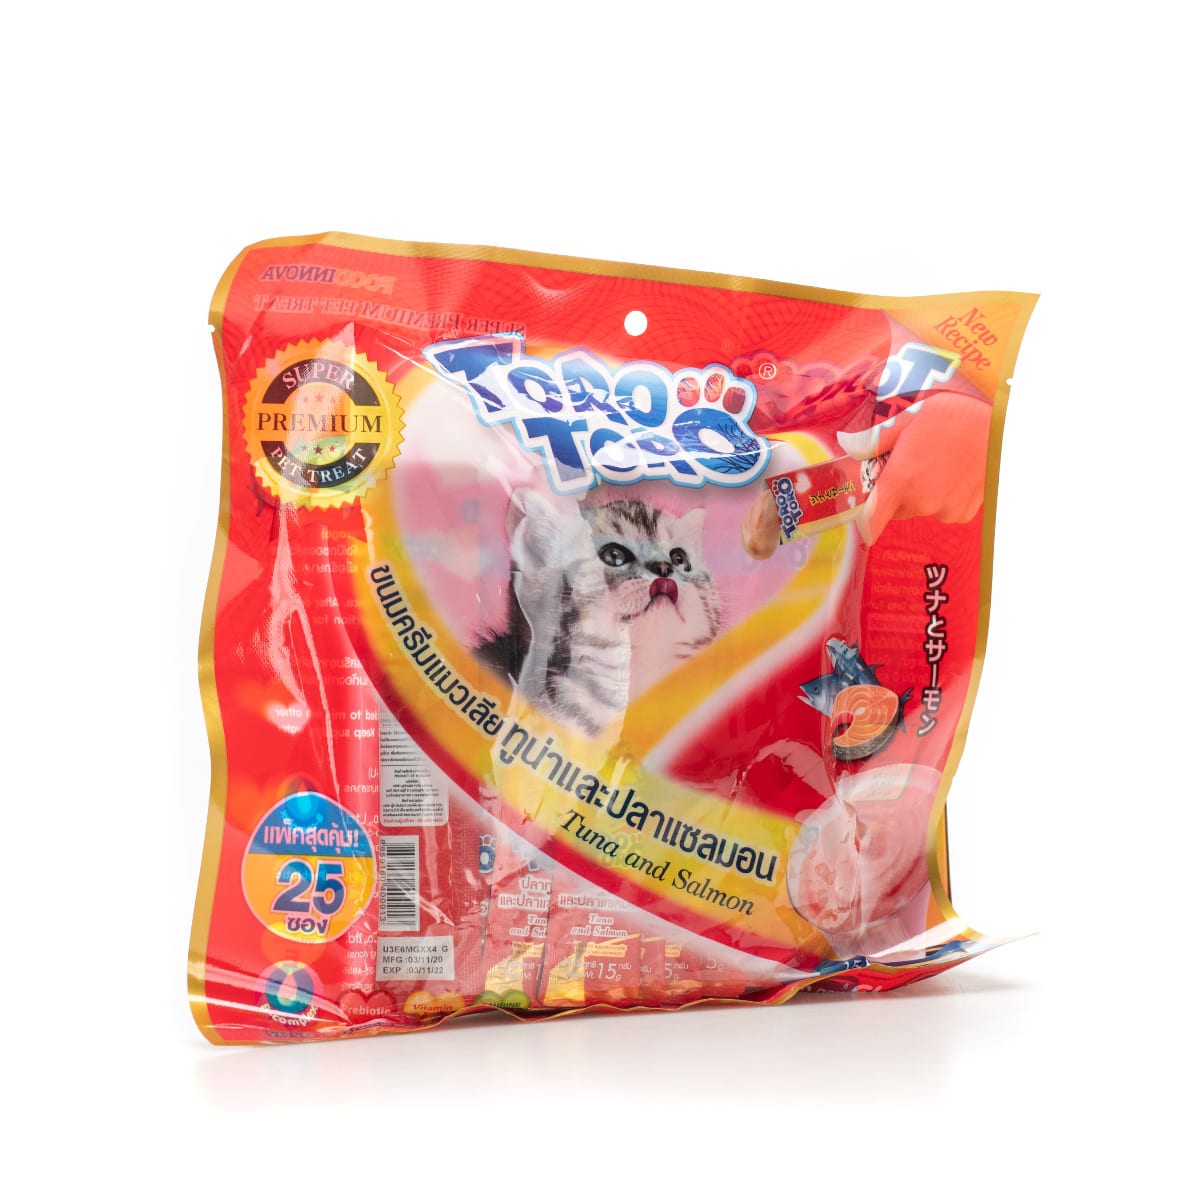 Toro Toro โทโร โทโร่ ขนมครีมแมวเลีย รสปลาทูน่าและปลาแซลมอน 15 g, 25 ชิ้น